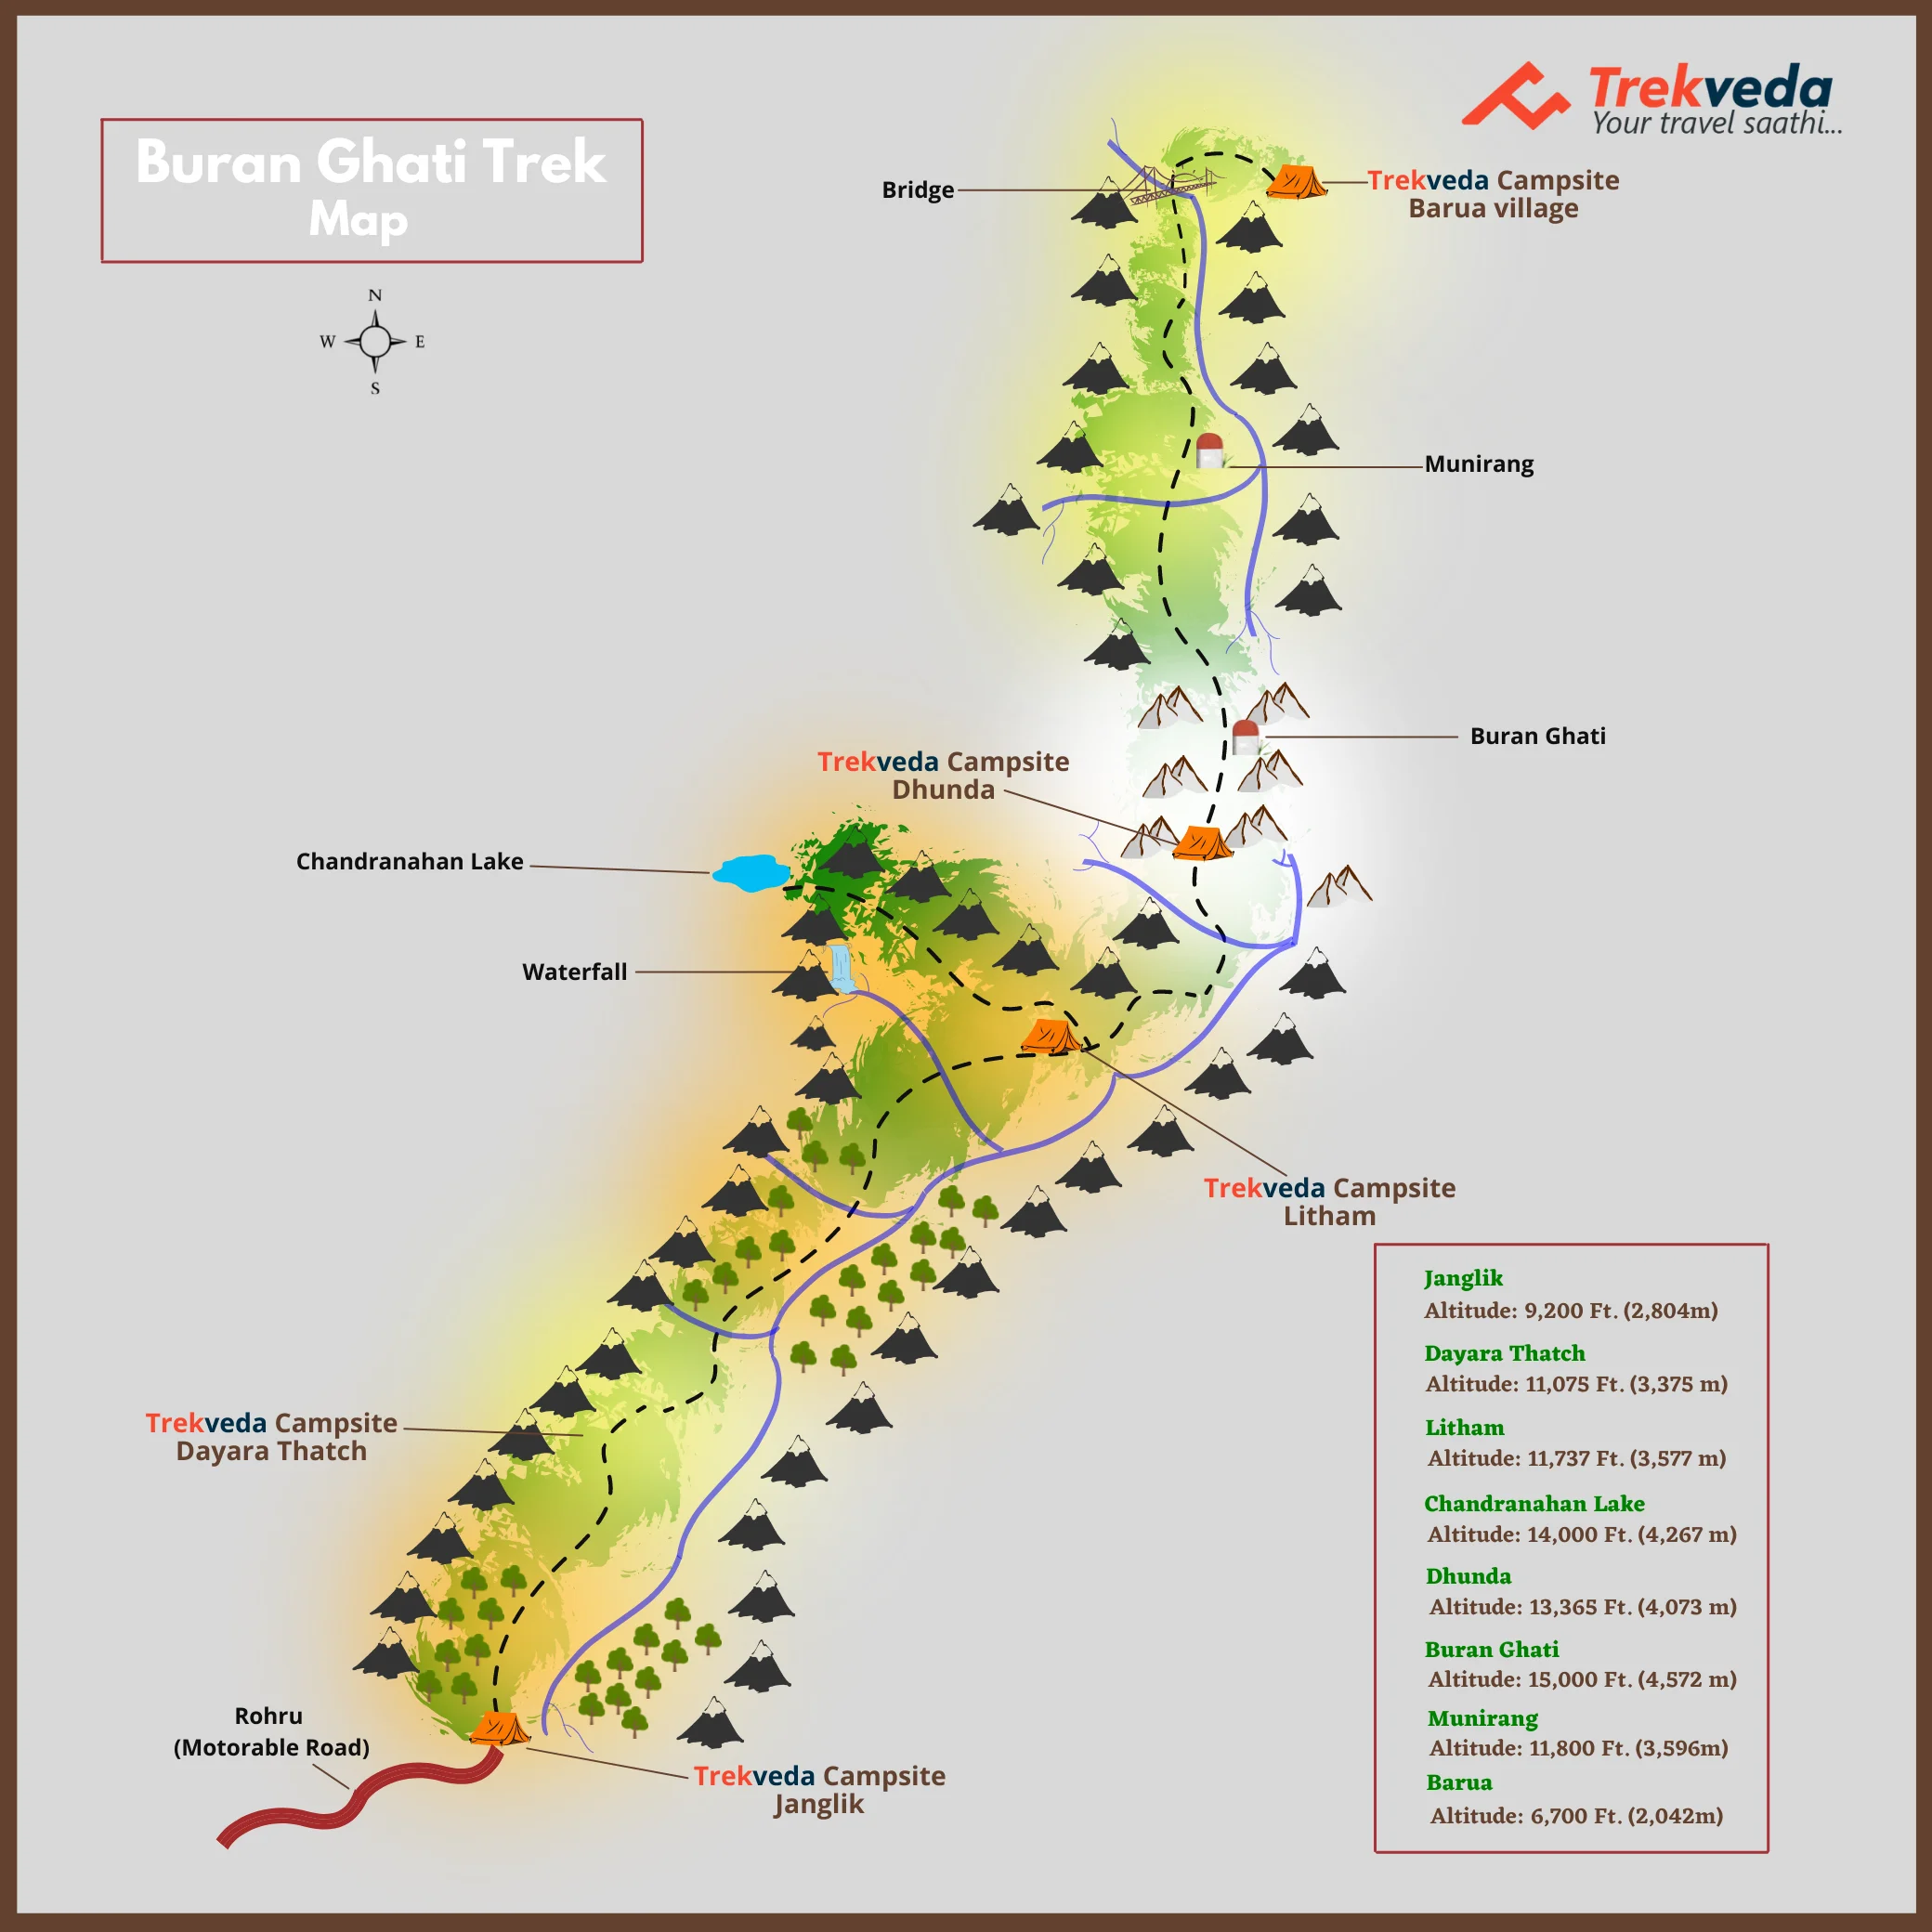 Buran Ghati Trek Map